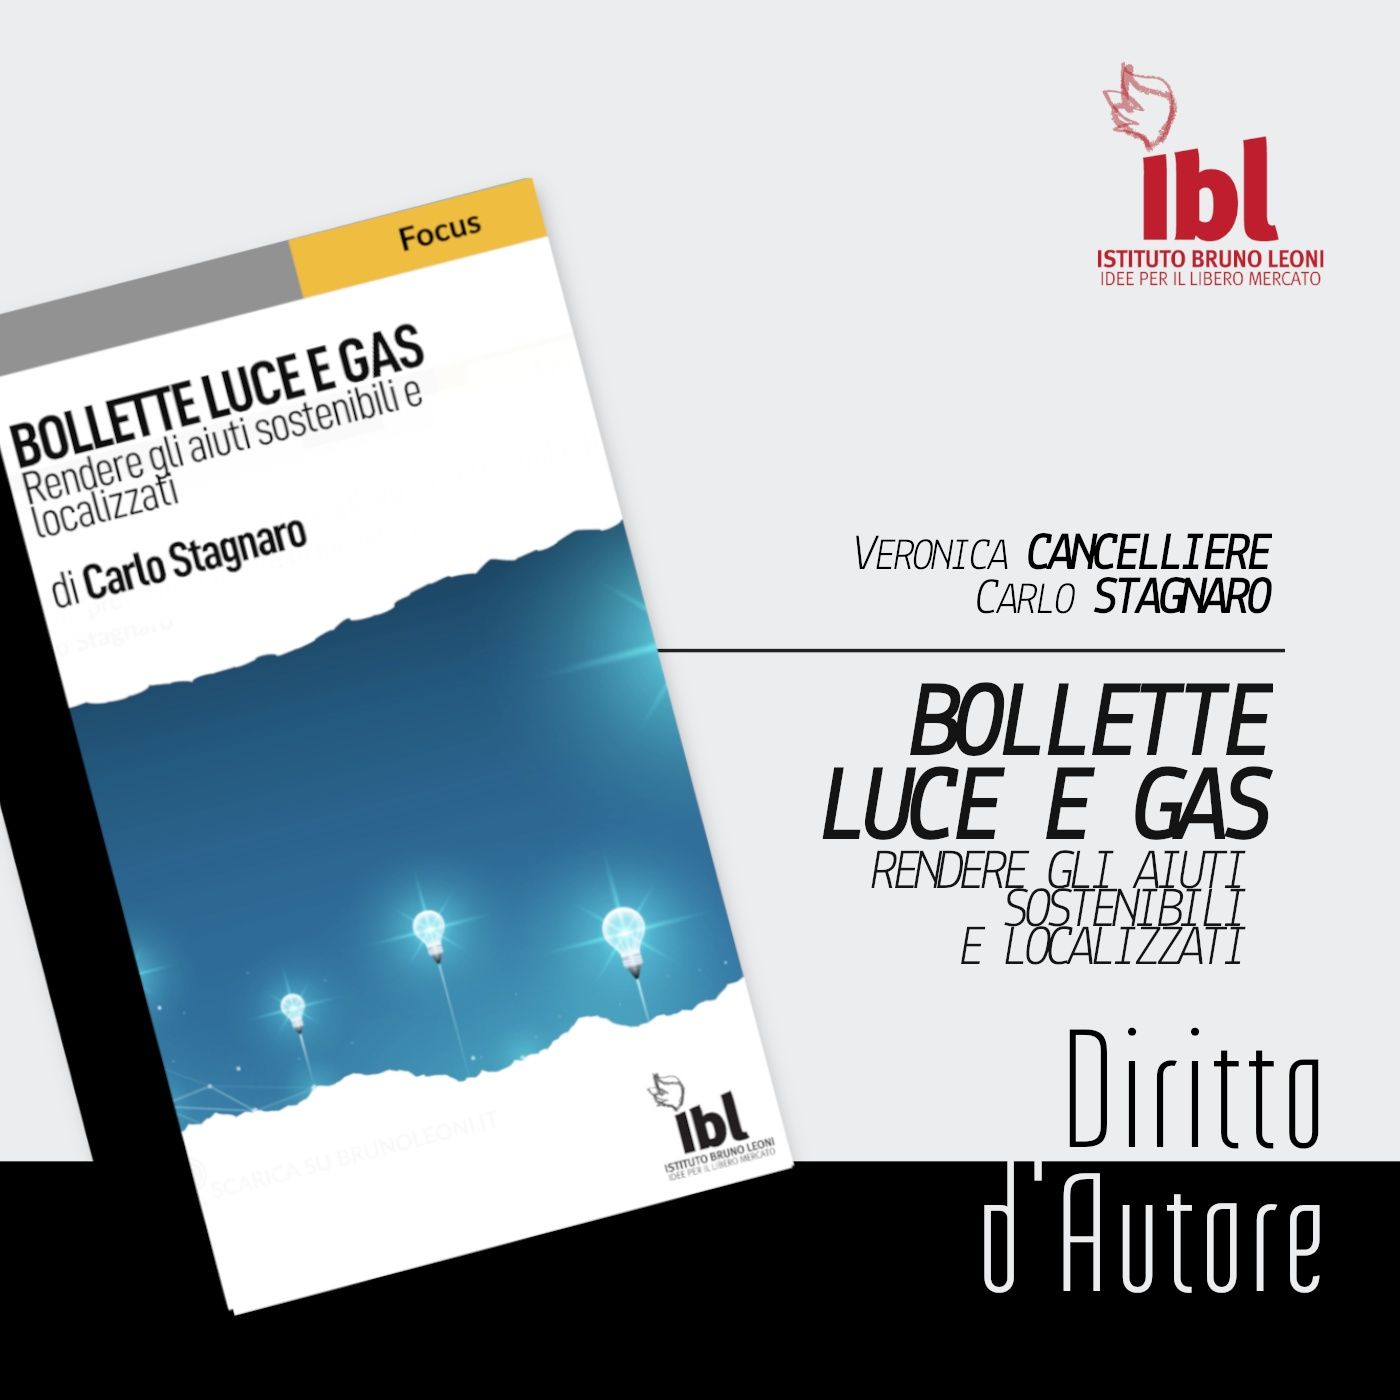 Bollette luce e gas: rendere gli aiuti sostenibili e focalizzati, con Carlo Stagnaro - Diritto d'Autore